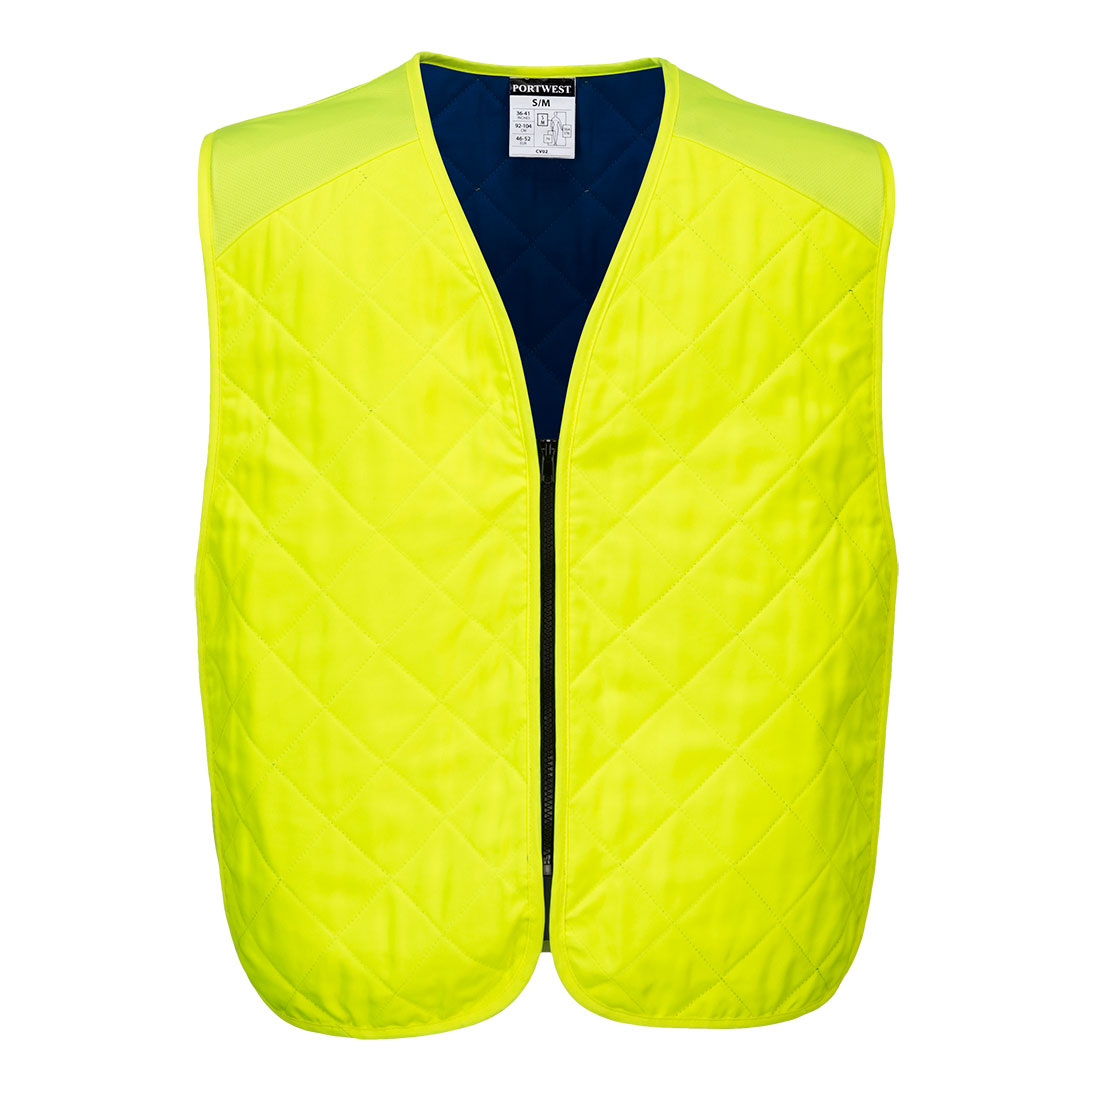 Chladicí odpařovací vesta Barva: žlutá, Velikost: L/XL